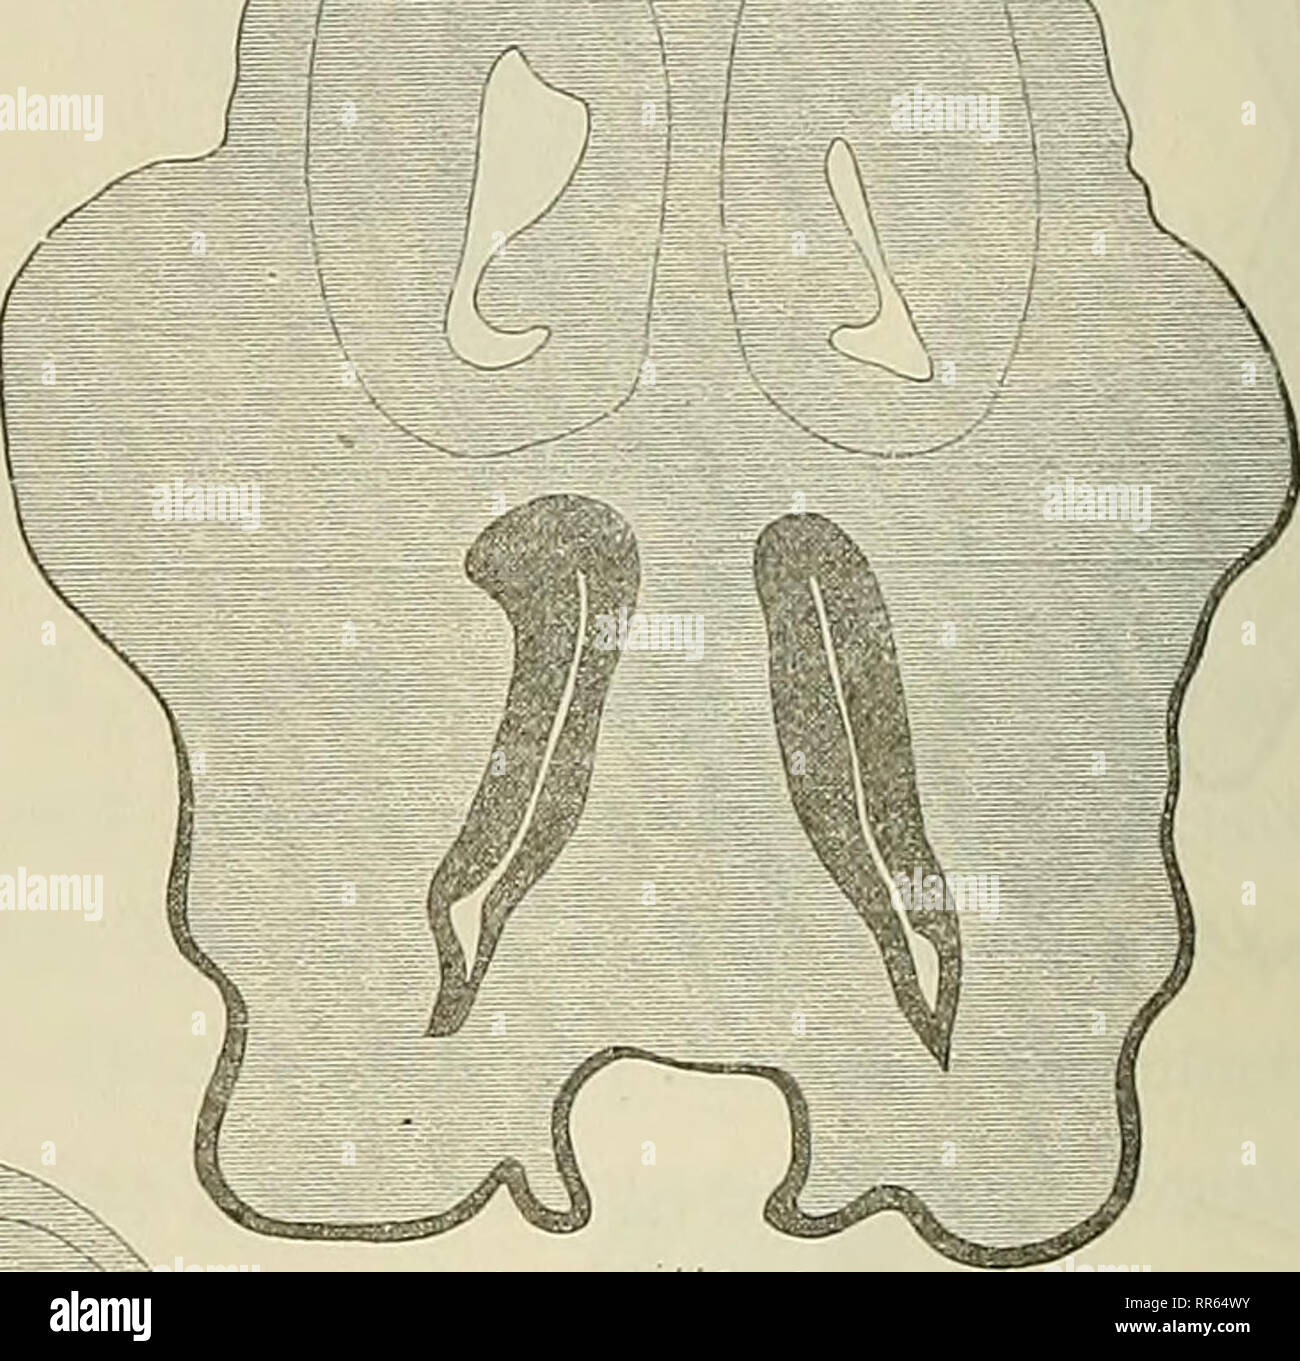 . Abhandlungen der Senckenbergischen naturforschenden Gesellschaft. L'histoire naturelle. - 46 - lateralen Nasenfortsatzes medialen und ist eine Verschmelzung erfolgt ; l'homme sieht daher en Fig. 5b, die einen durch den Durchschnitt der mittleren la section Le Nasenhöhle- Krokodil und das Epithel embryons darstellt, Nasenhöhlenwand Epithellamelle der durch eine kontinuierlich mit dem Epithel des Mundhöhlendaches in Verbindung. Im nächsten Stadium. Fig. 6a-c (Taf. IX, fig. 72-73), ist diese Verschmelzung der beiden noch weiter fortgeschritten Nasenfortsätze effet und eine Fig.6 vollkommenere" ü L J Banque D'Images